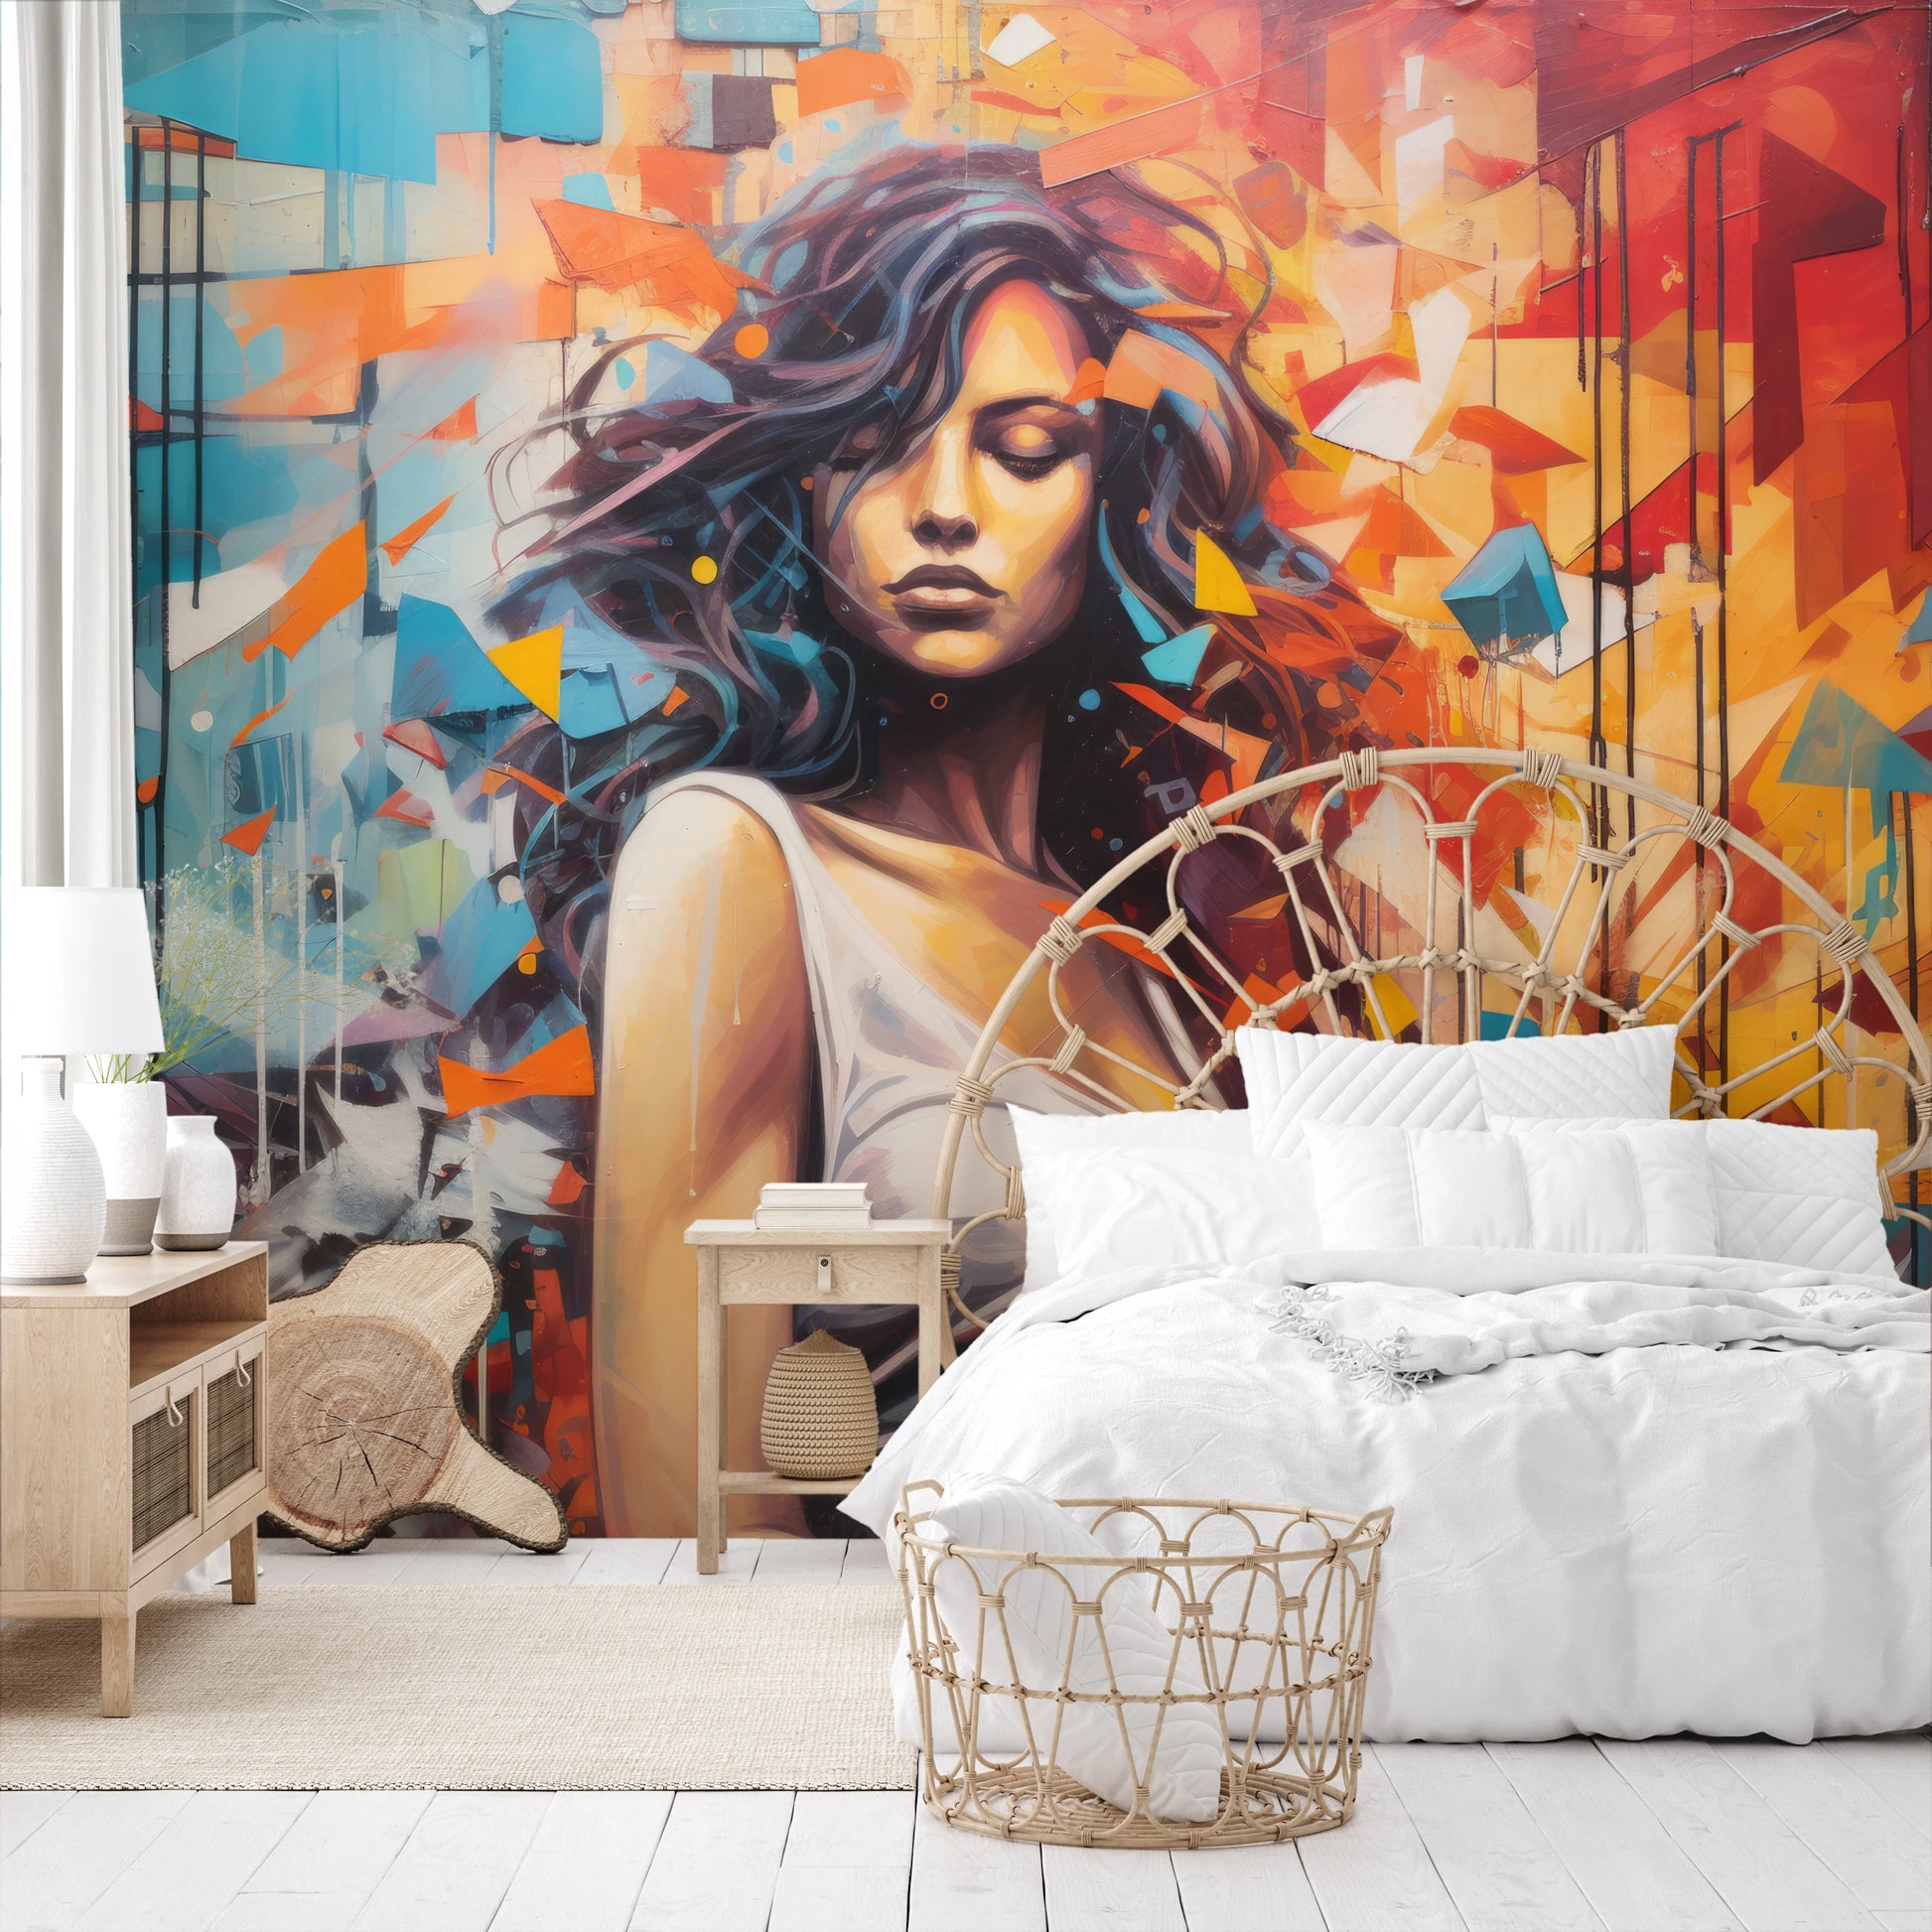 Fototapeta malowana o nazwie Urban Siren pokazana w aranżacji wnętrza.